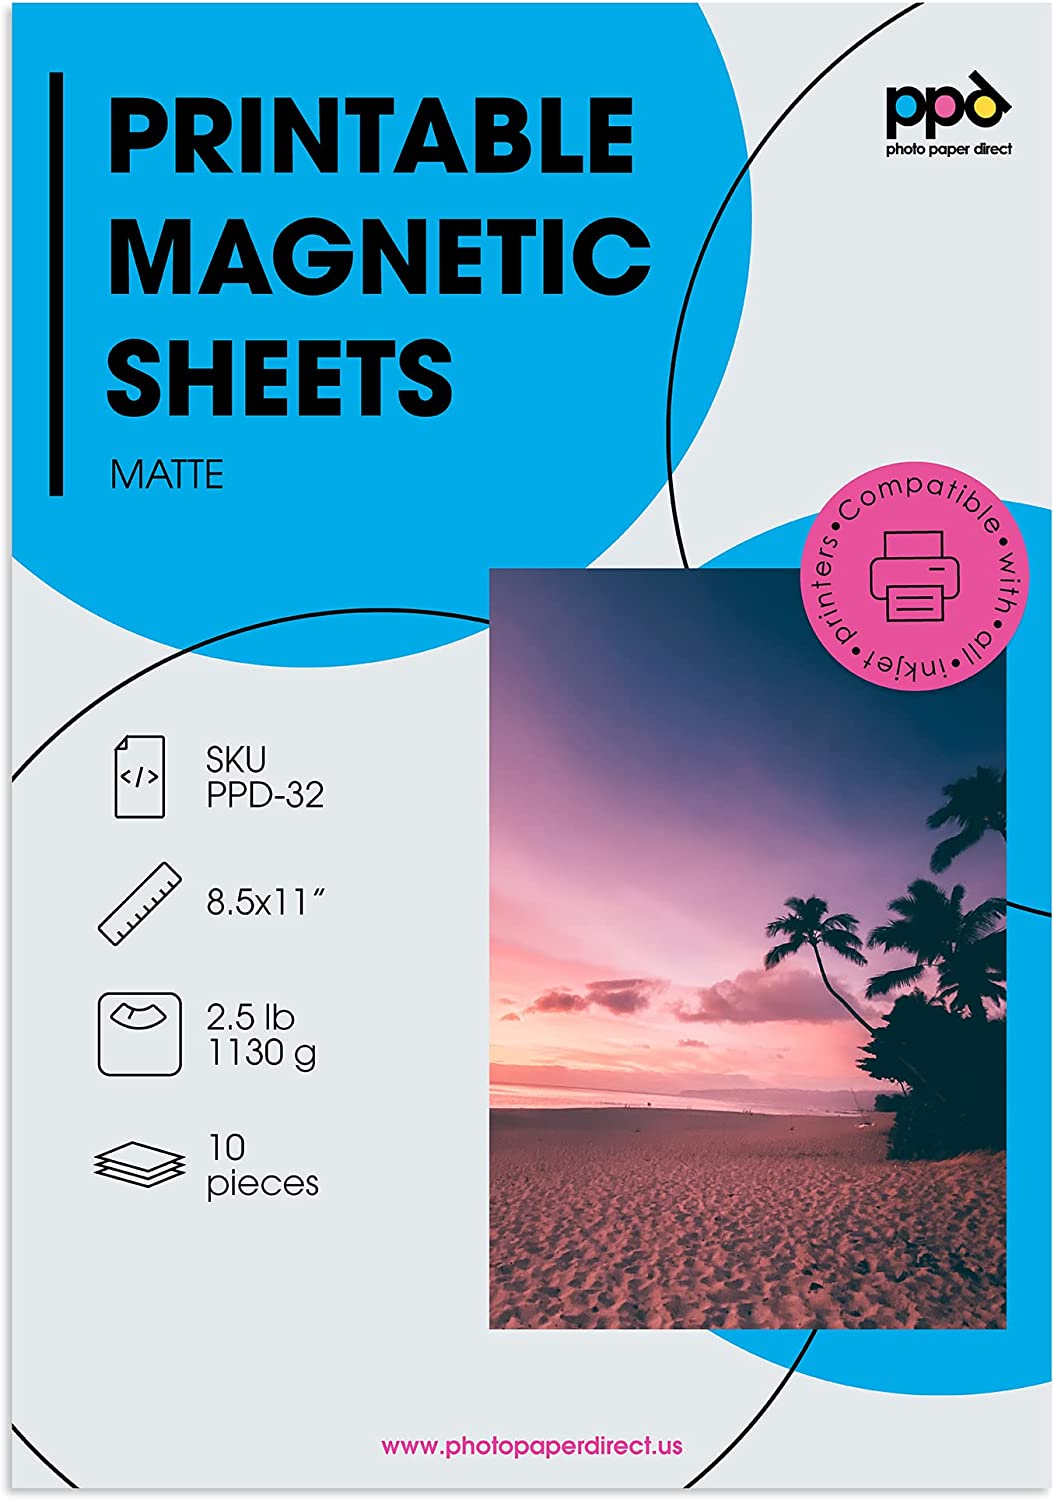 PPD Inkjet Photo Magnetic Printable Matte Sheet LTR 8.5x11" PPD-32